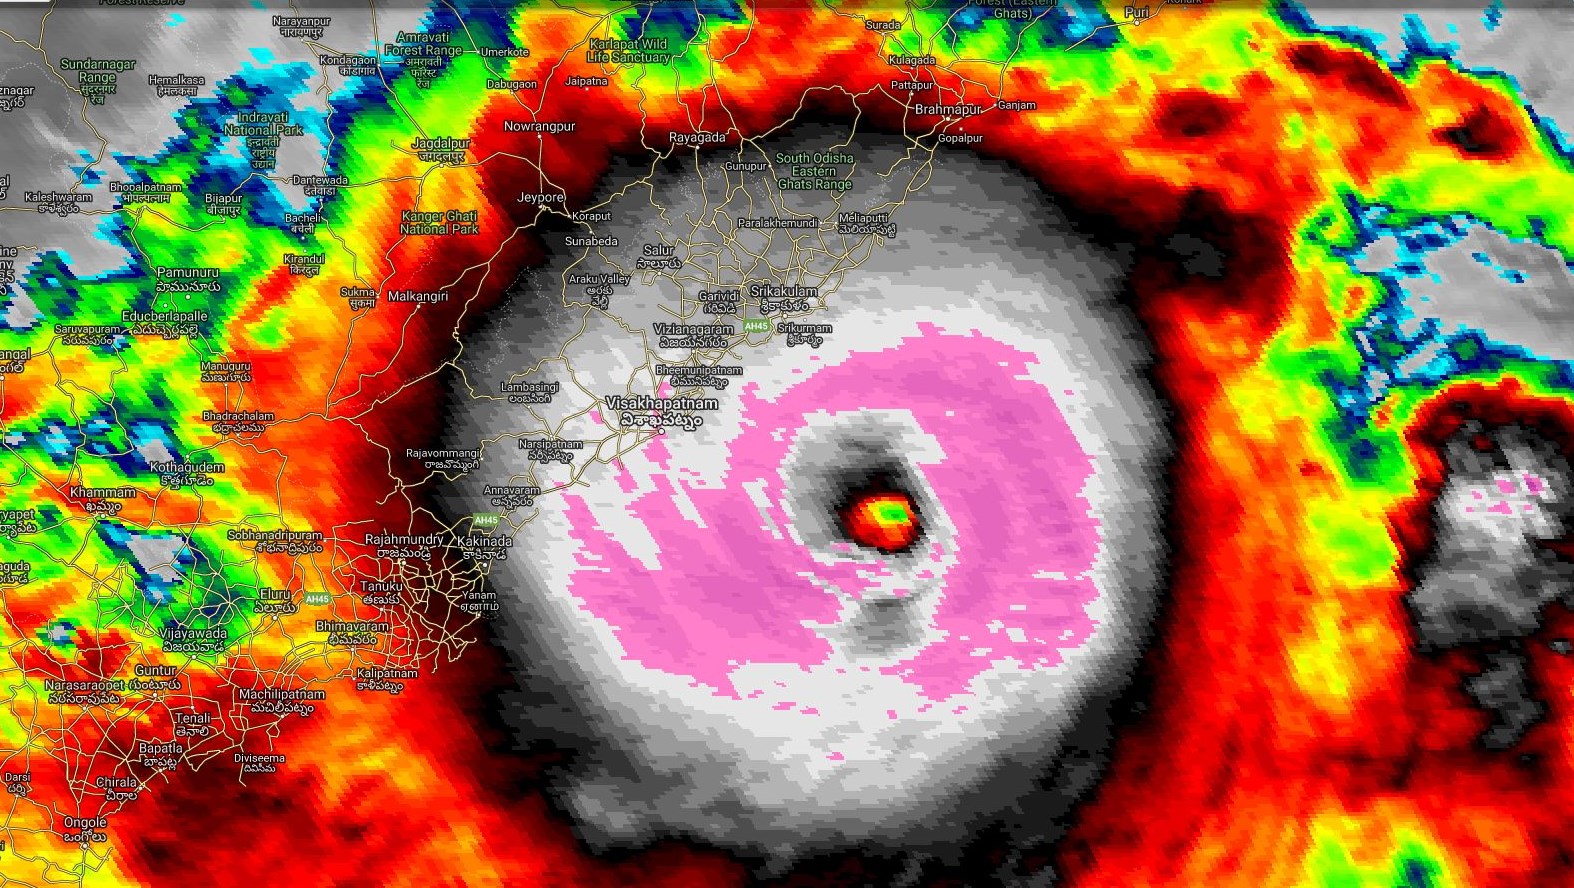 Le cyclone tropical intense FANI(01B) capturé par satellite à 12h40 heure des Mascareignes. Il s'intensifie encore et s'approche dangereusement des côtes indiennes.